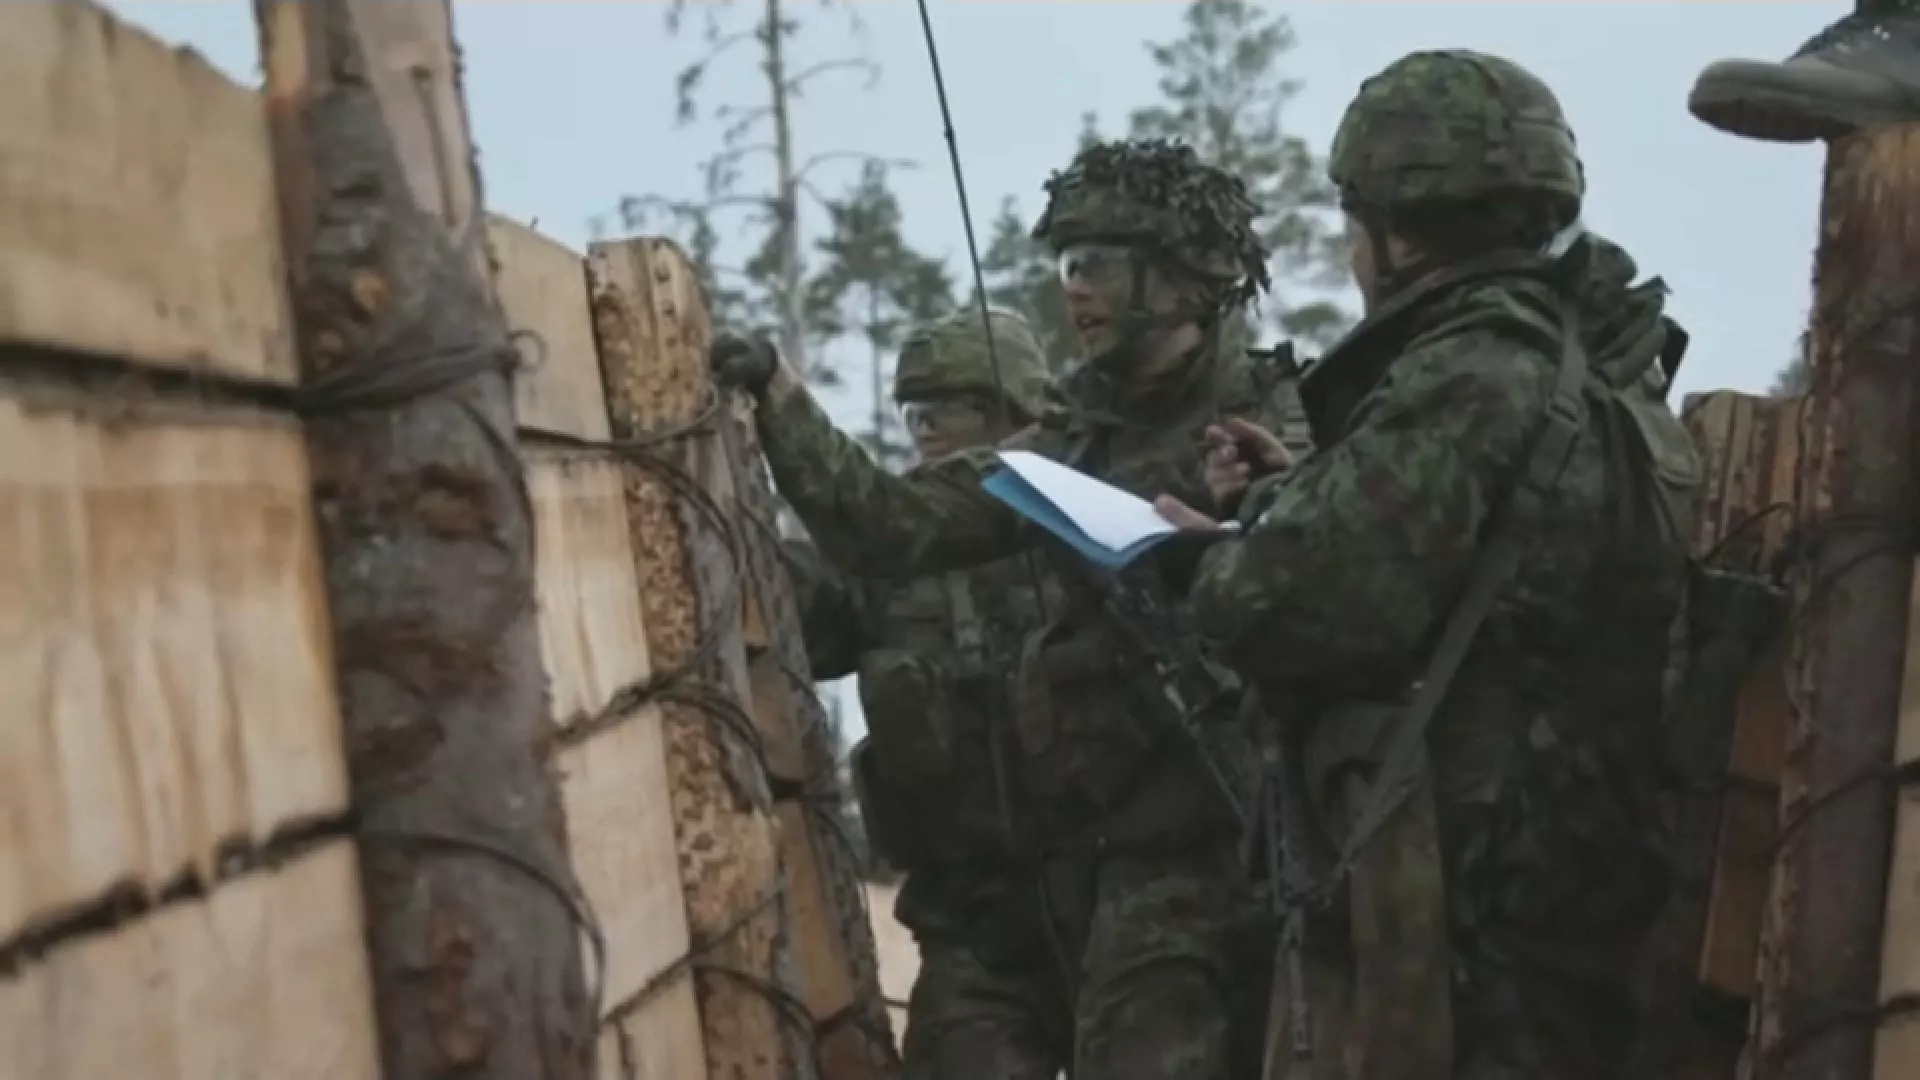 Shtetet baltike do të ndërtojnë fortifikime të reja për të forcuar kufirin lindor të NATO